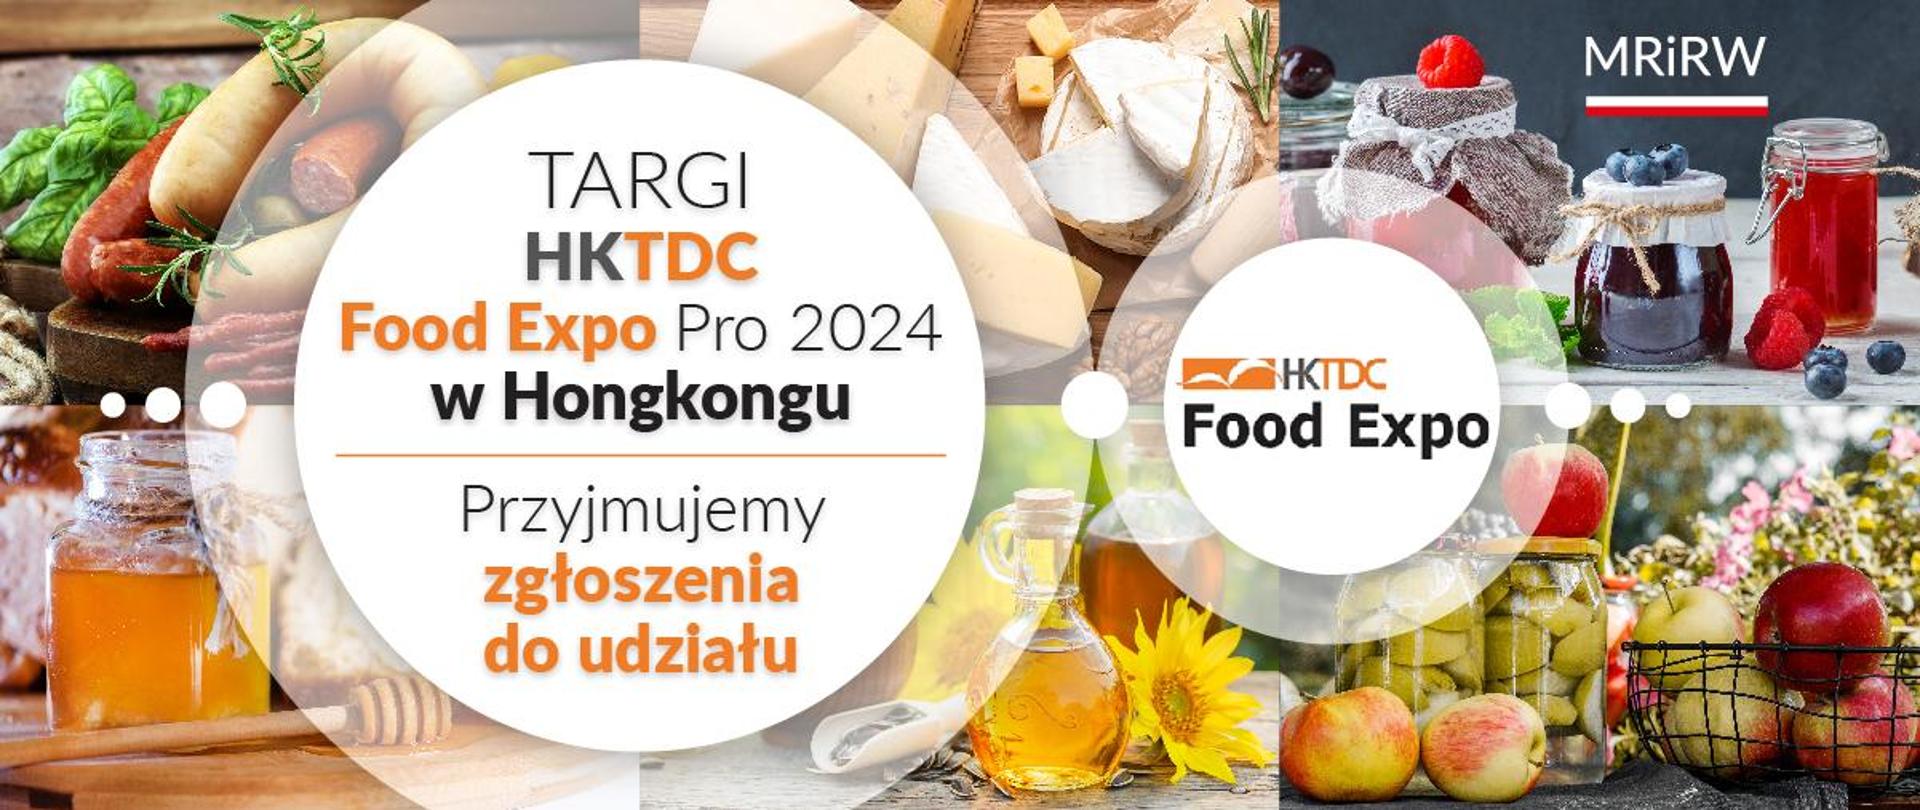 Targi HKTDC Food Expo Pro 2024 w Hongkongu 